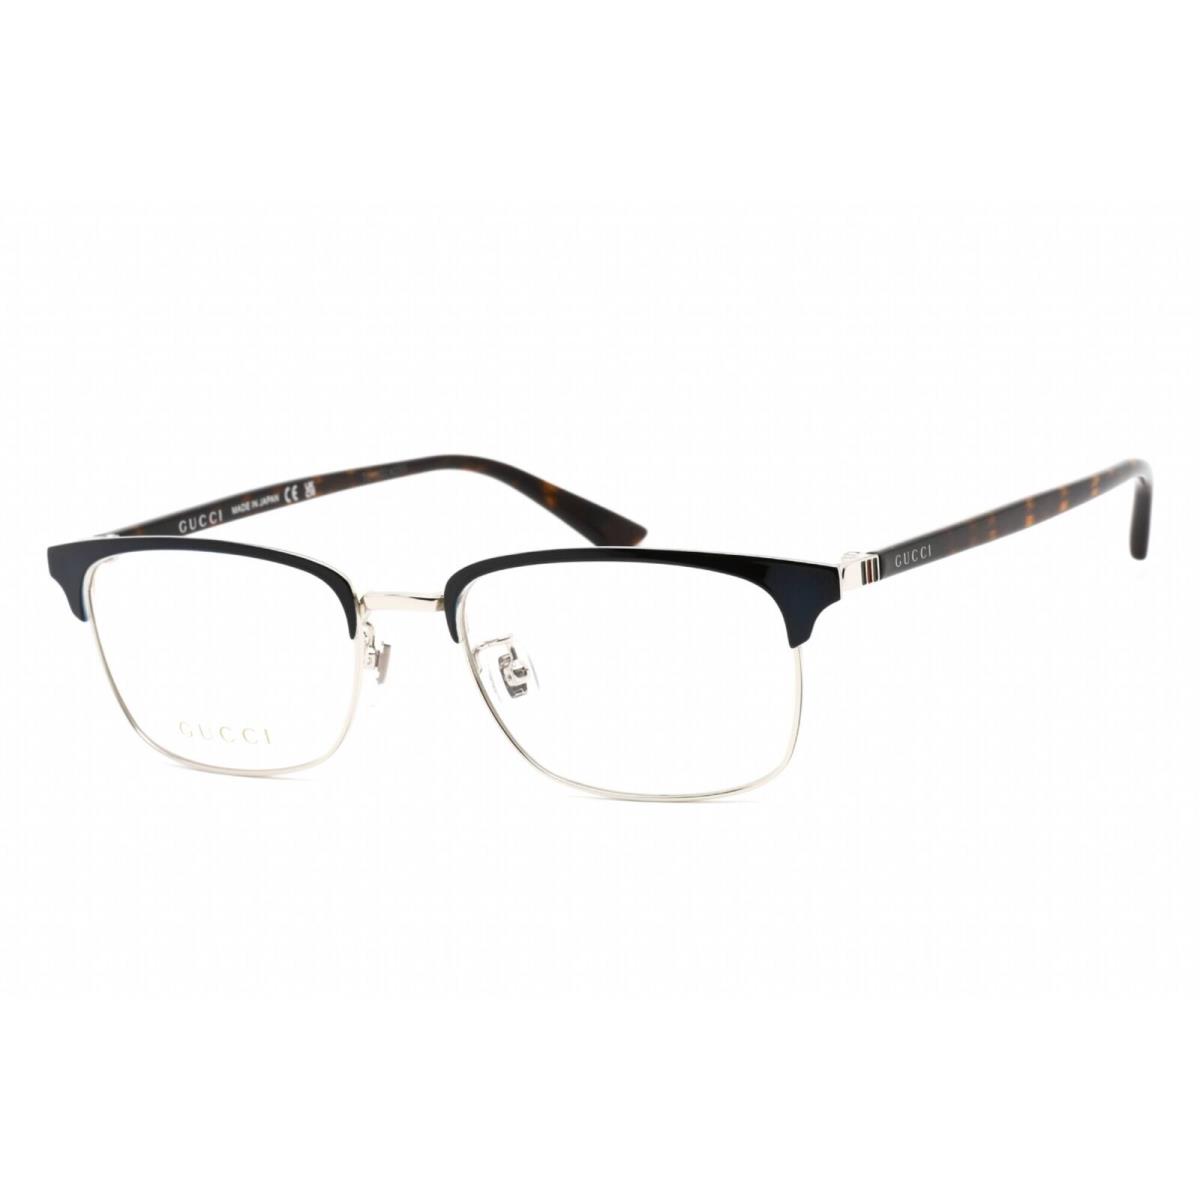 Gucci Men`s Eyeglasses Blue Havana Acetate Rectangular Shape Frame GG0131O 003